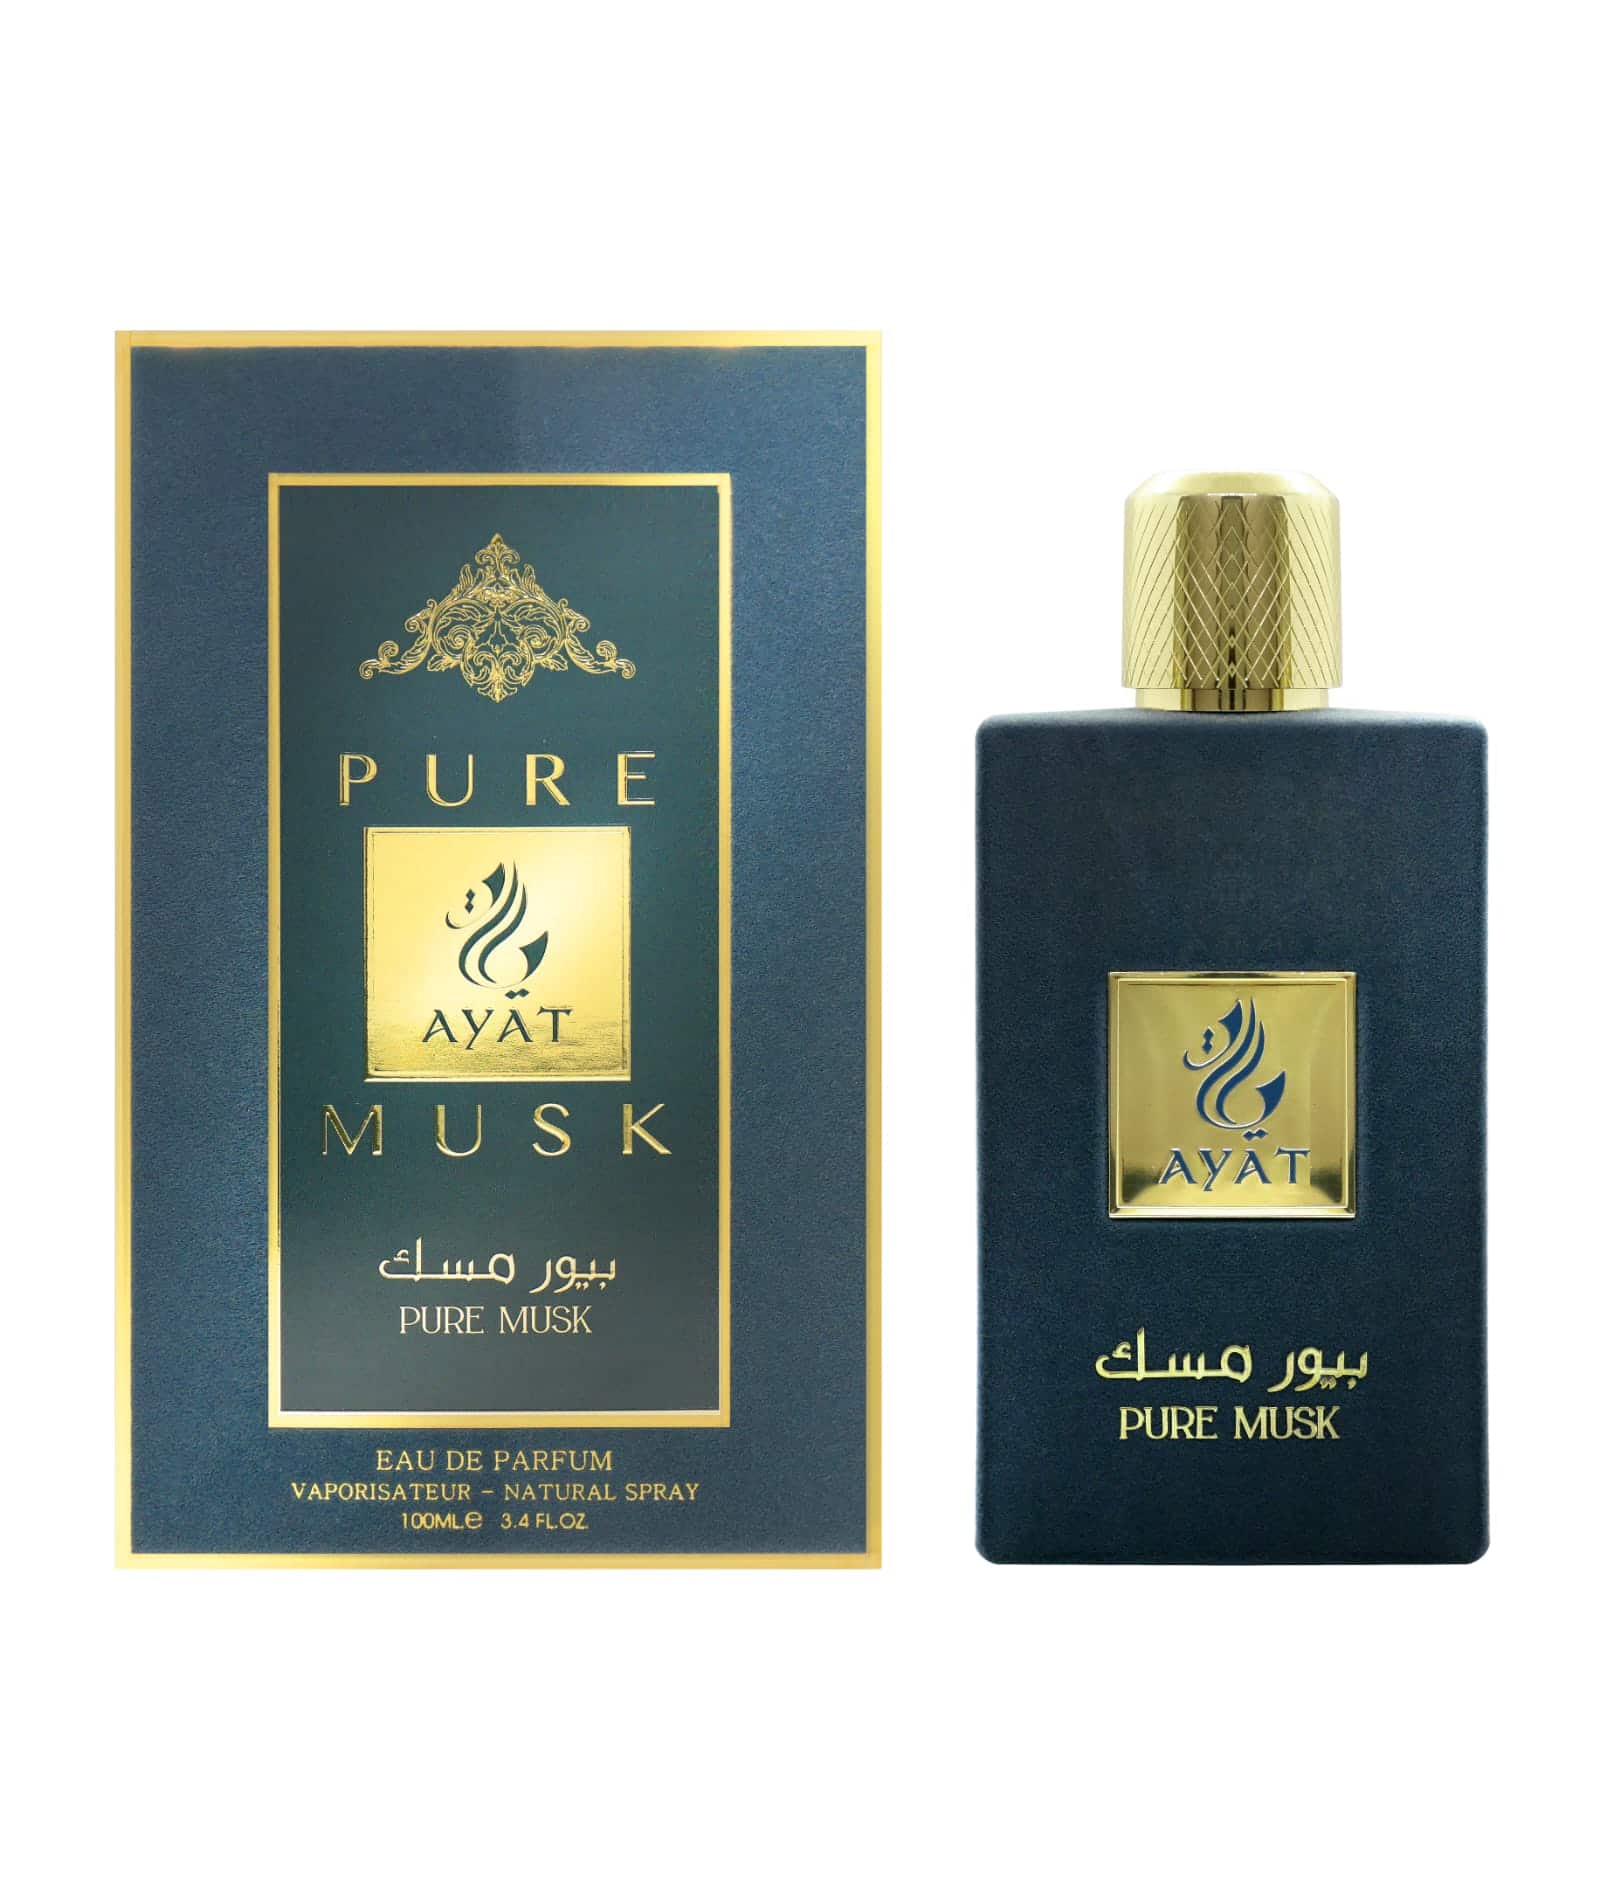 Pure musk velvet perfume